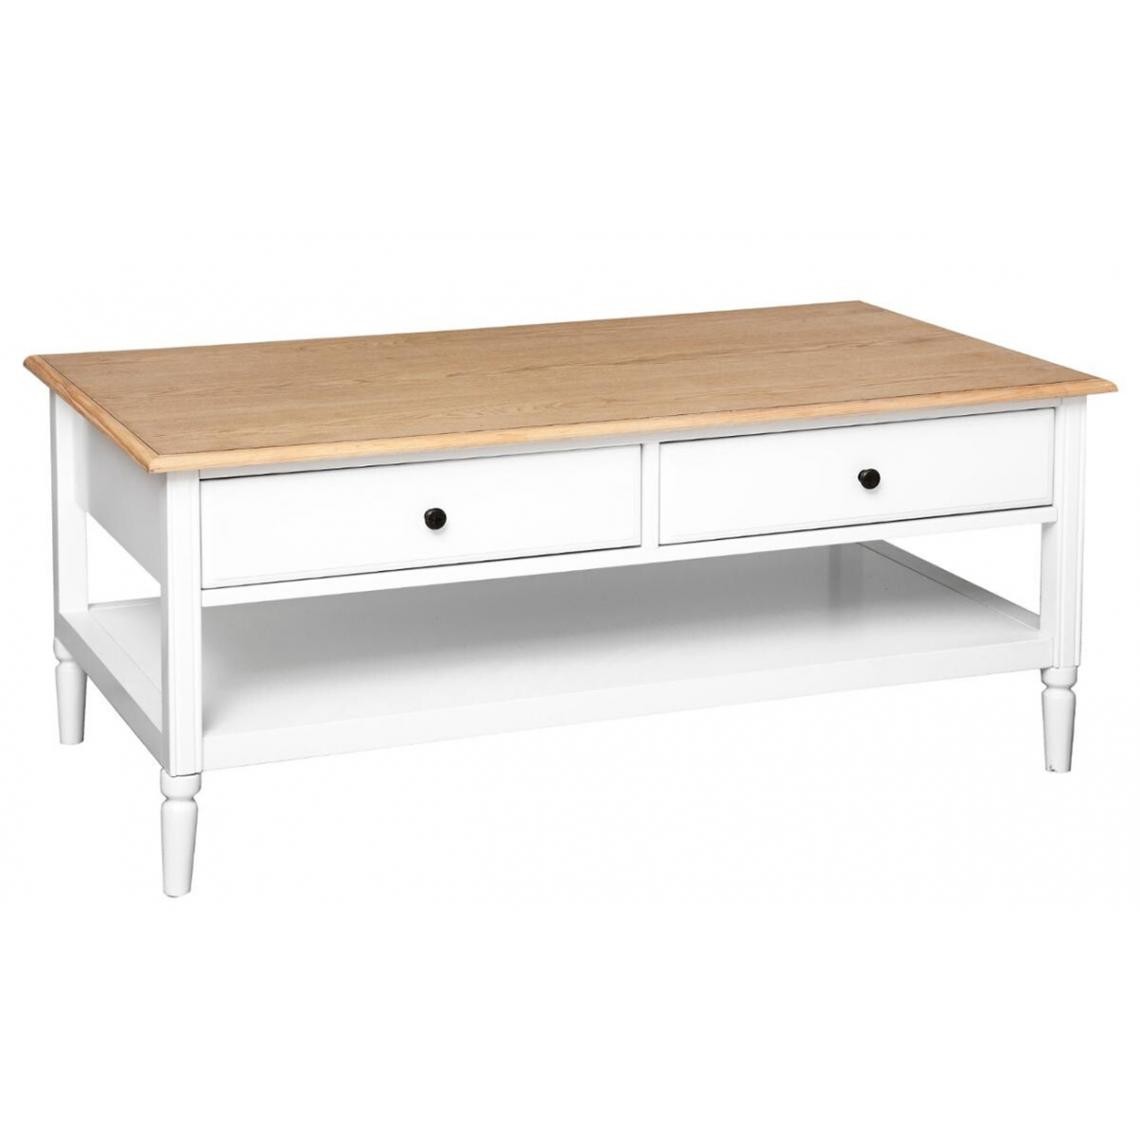 Pegane - Table basse avec rangement coloris blanc - Longueur 110 x Profondeur 60 x Hauteur 47 cm - Tables basses